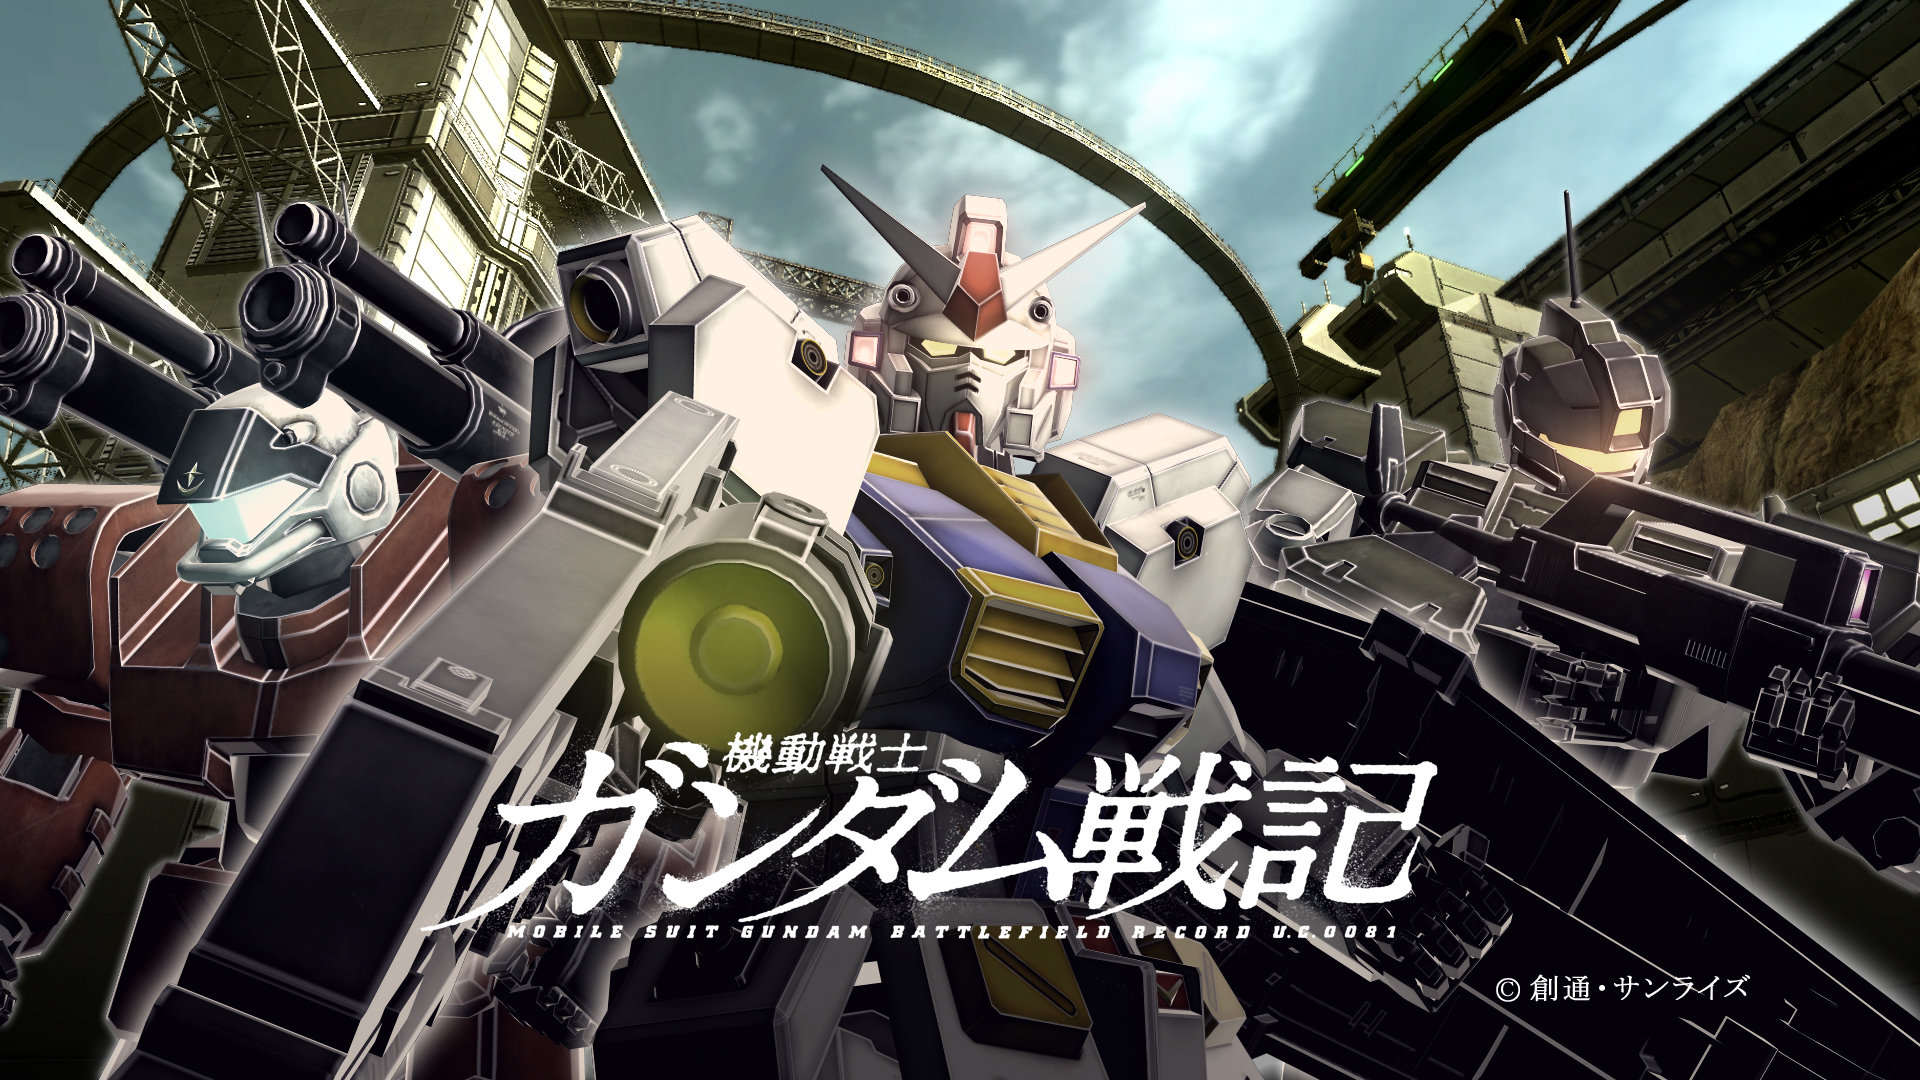 Best Gundam Wallpaper Id - Gundam Wallpaper Hd - HD Wallpaper 